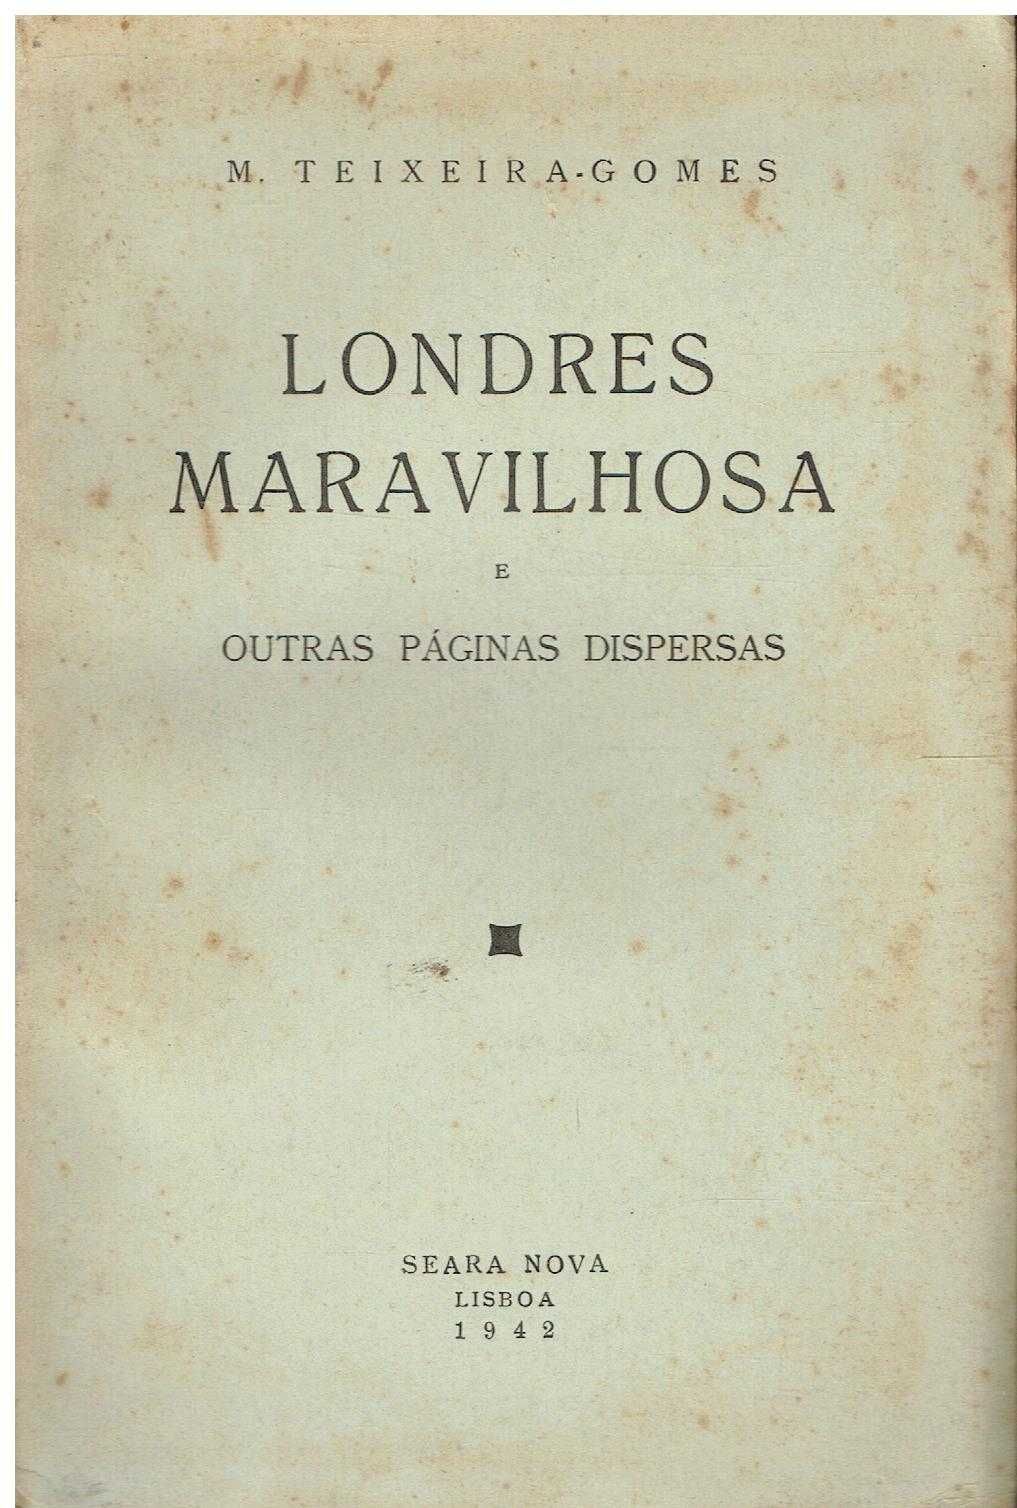 2394 - Livros de M. Teixeira-Gomes